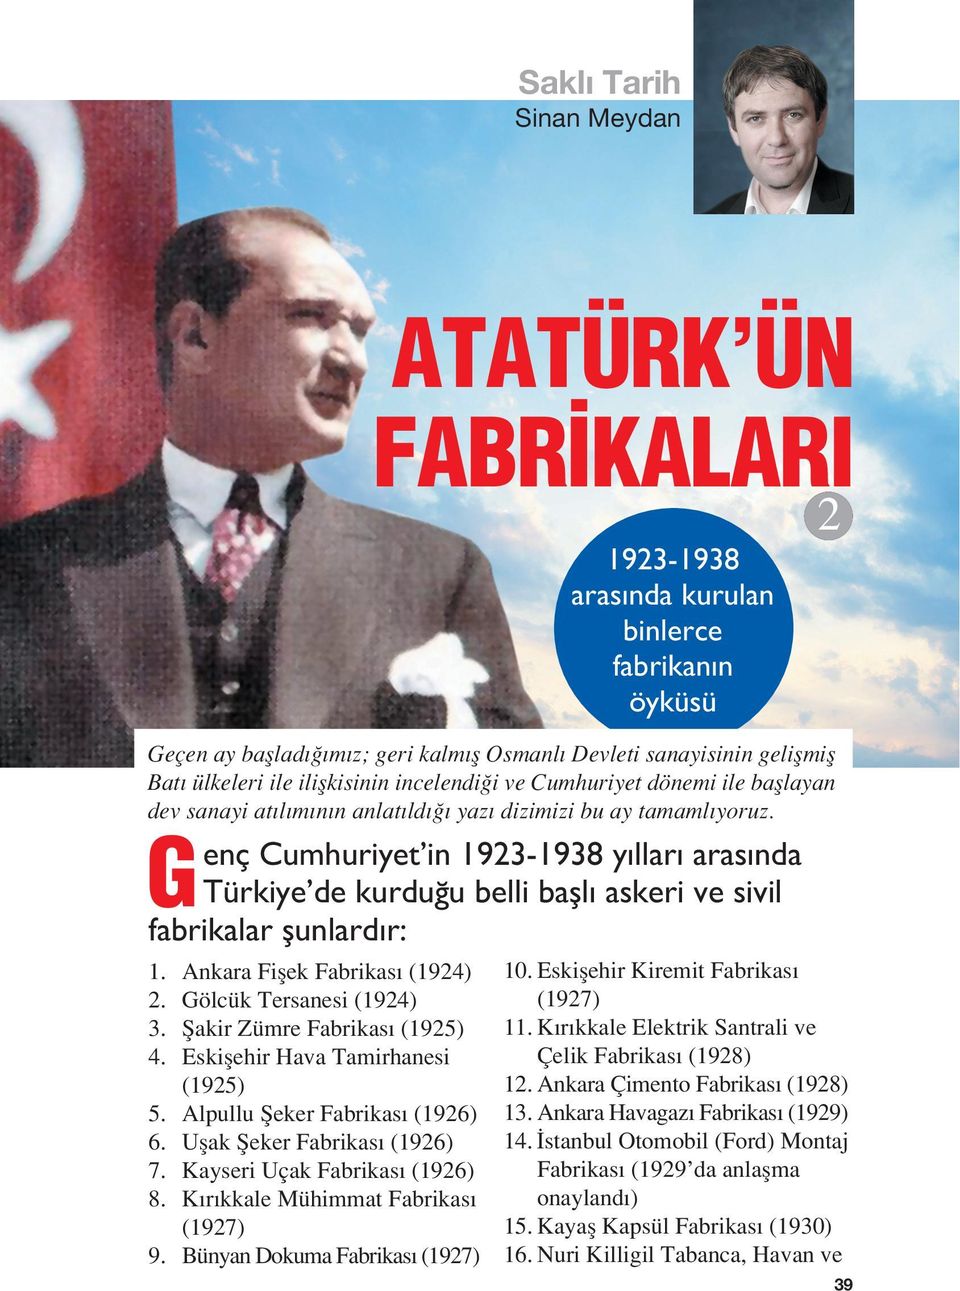 G enç Cumhuriyet in 1923-1938 y llar aras nda Türkiye de kurdu u belli bafll askeri ve sivil fabrikalar flunlard r: 1. Ankara Fiflek Fabrikas (1924) 2. Gölcük Tersanesi (1924) 3.